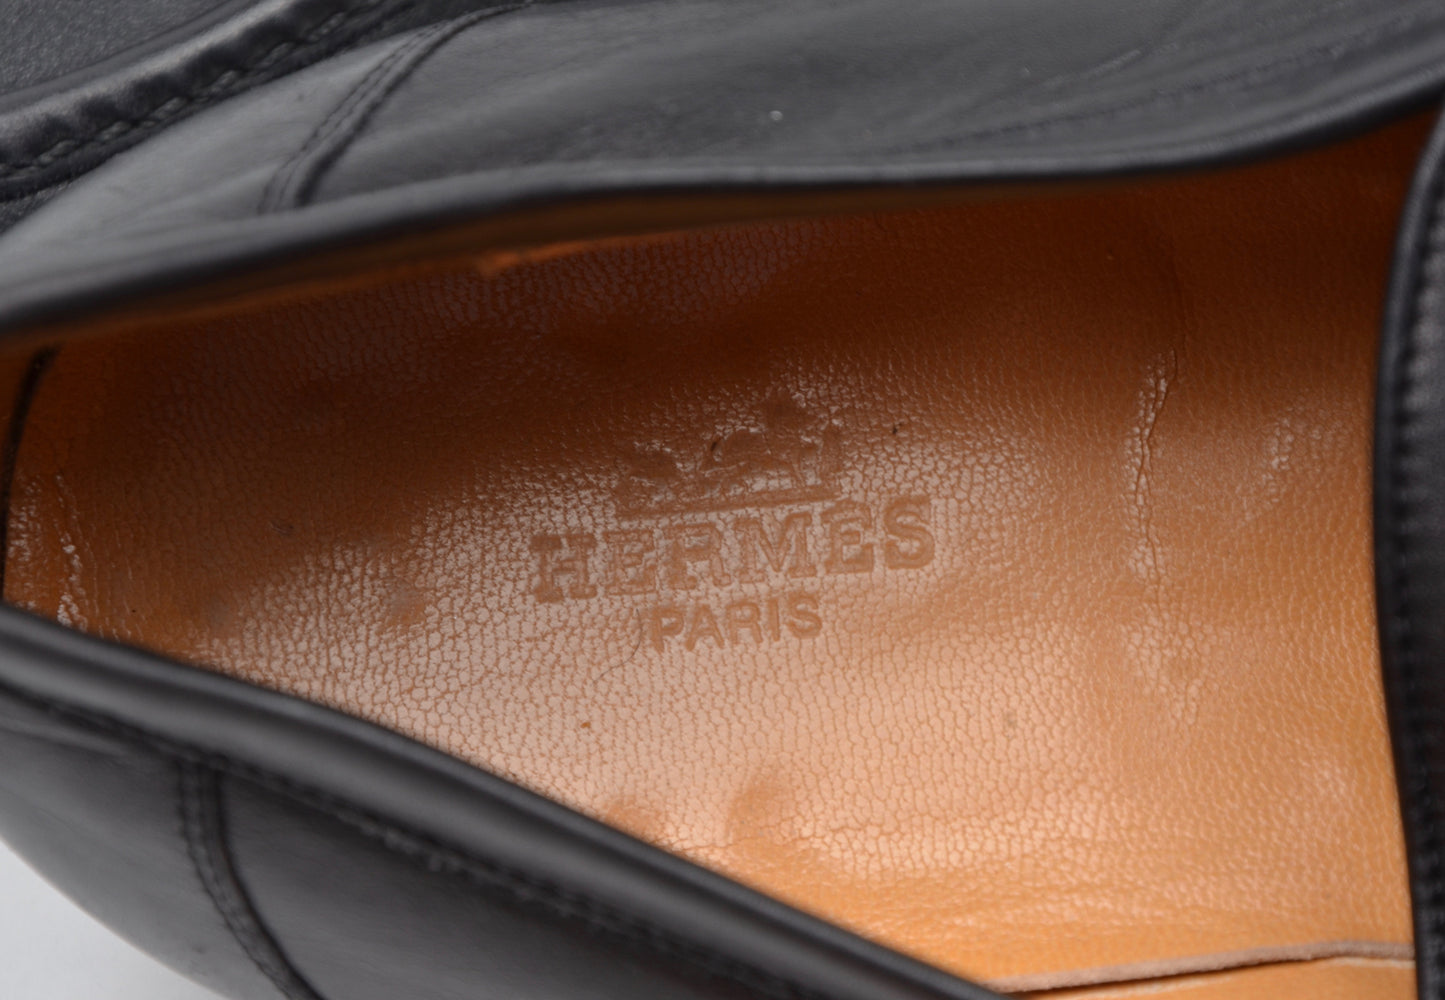 Hermès Paris H-Schnallen-Loafer Größe 42,5 - Schwarz